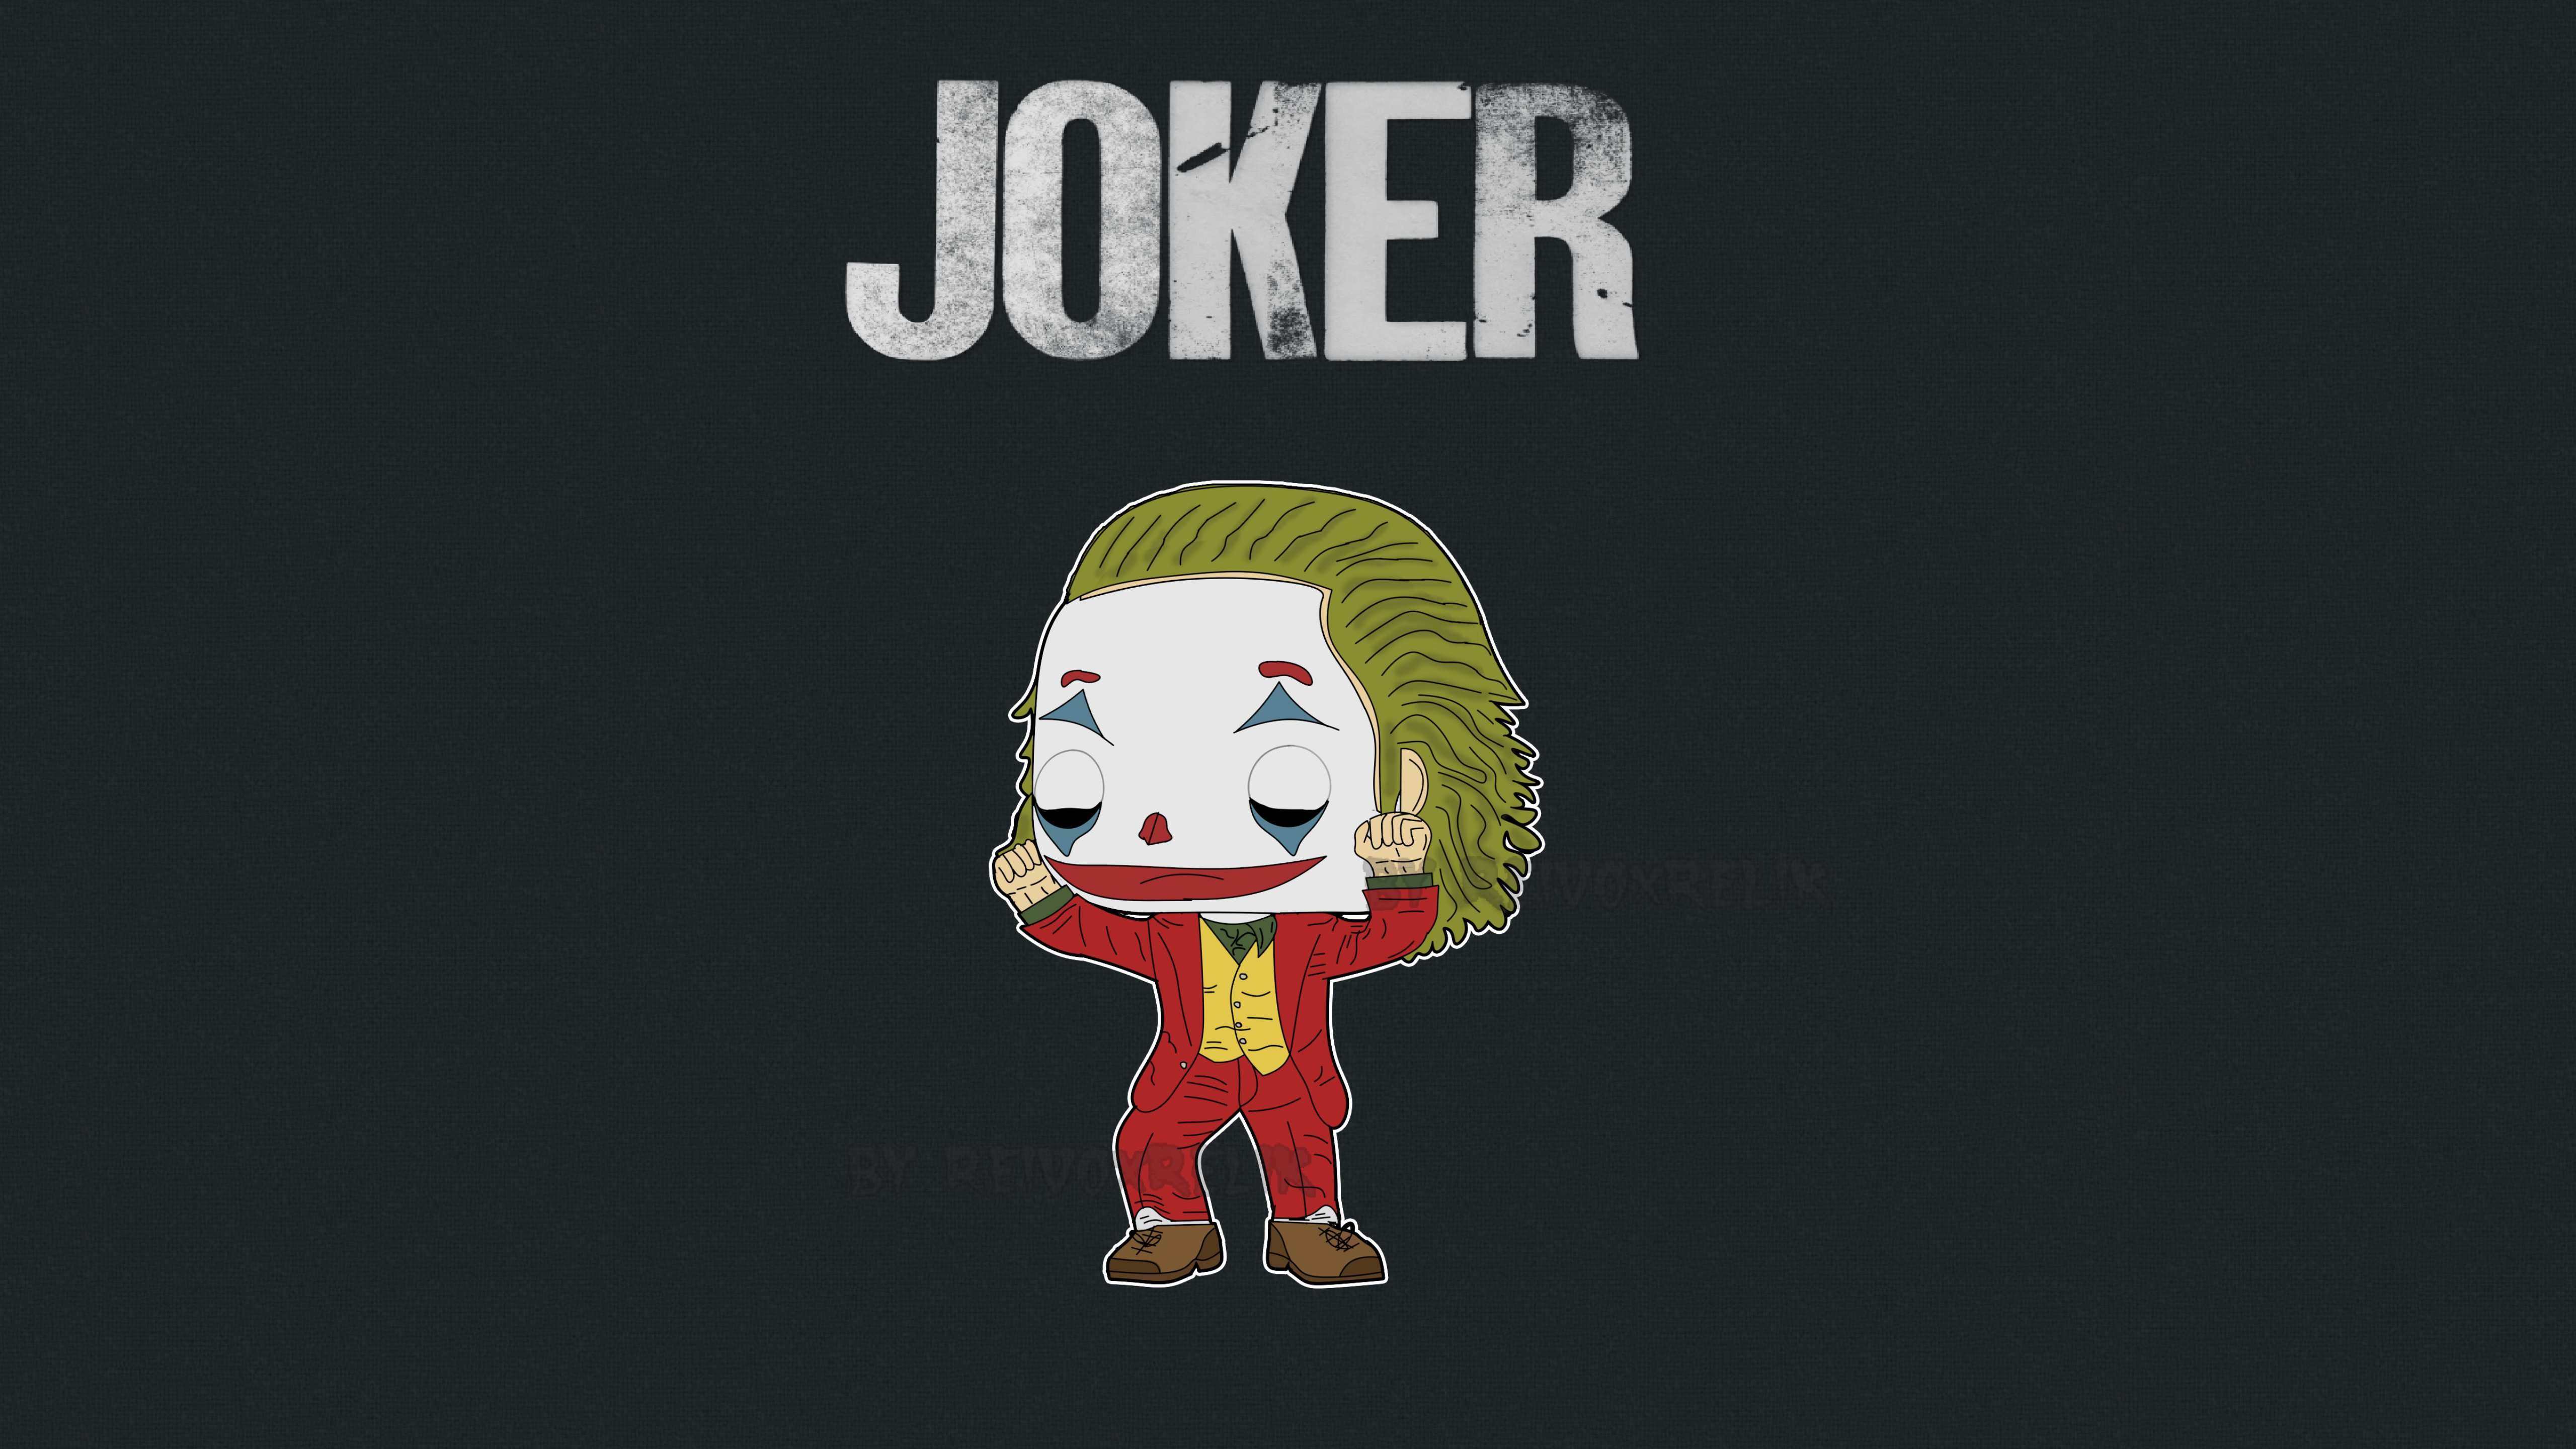 Joker 2019 Funko Pop , HD Wallpaper & Backgrounds